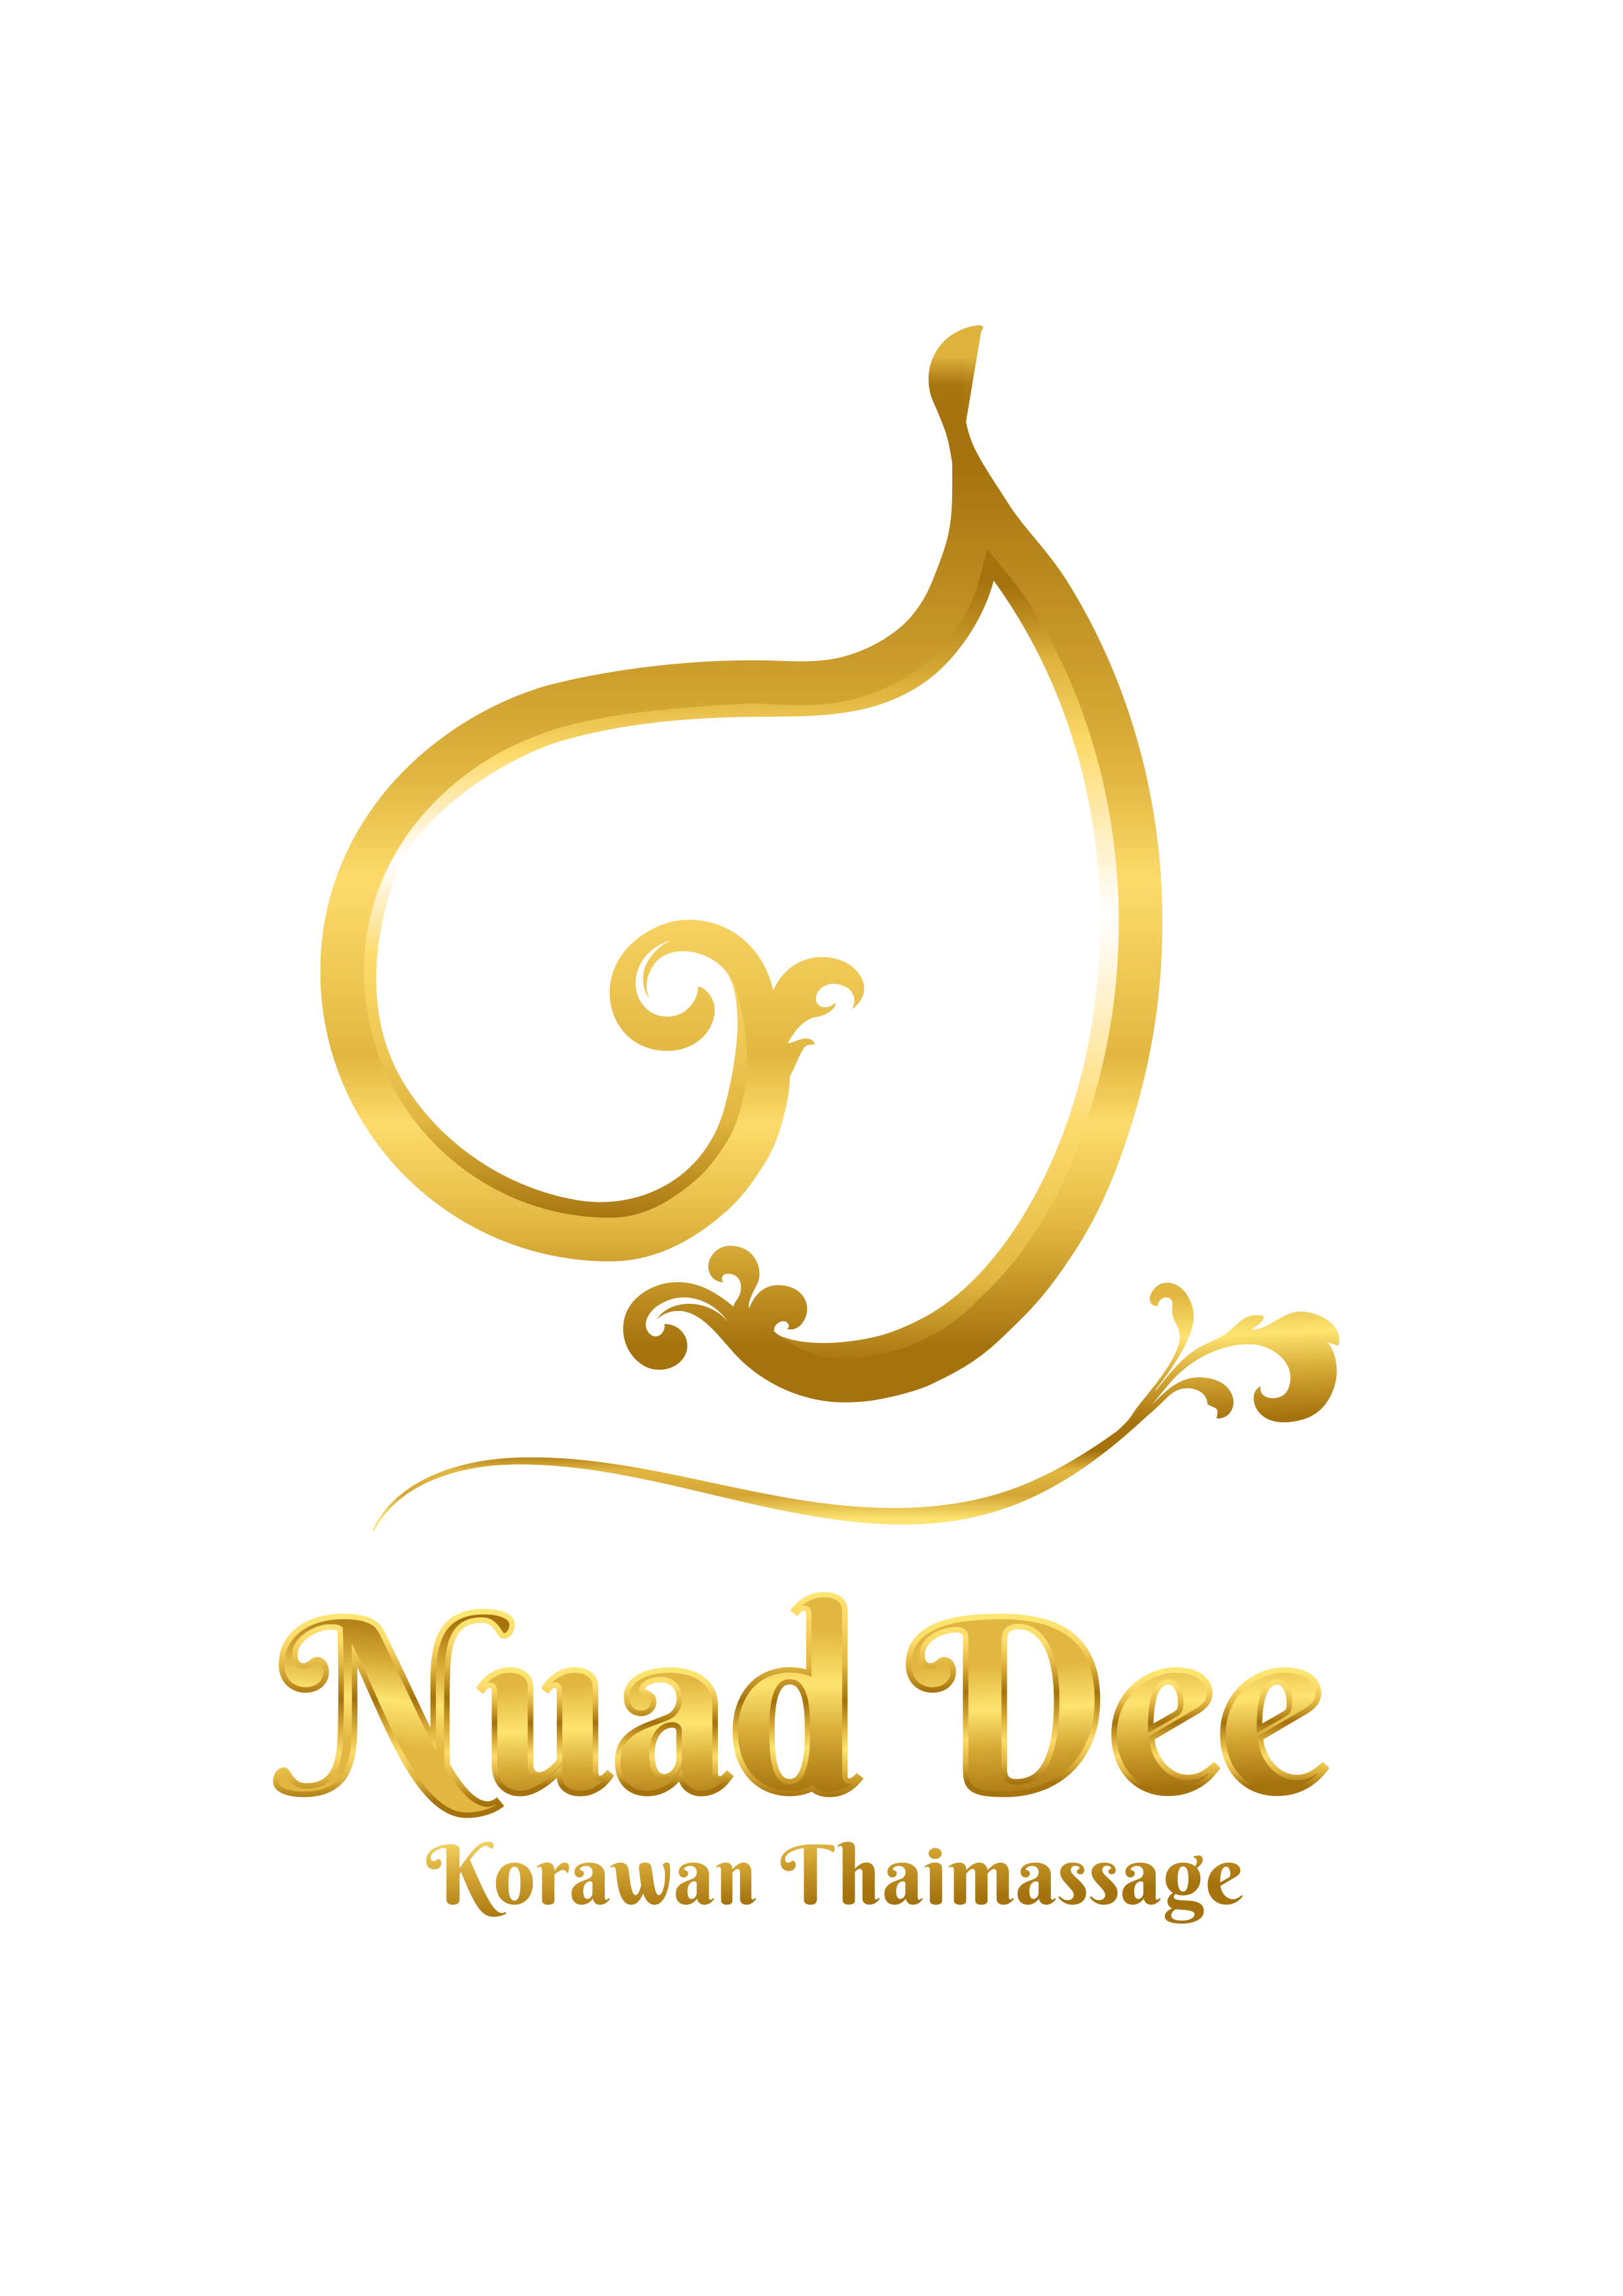 korawan-thaimassage-konstanz-logo-nuad-dee-gold